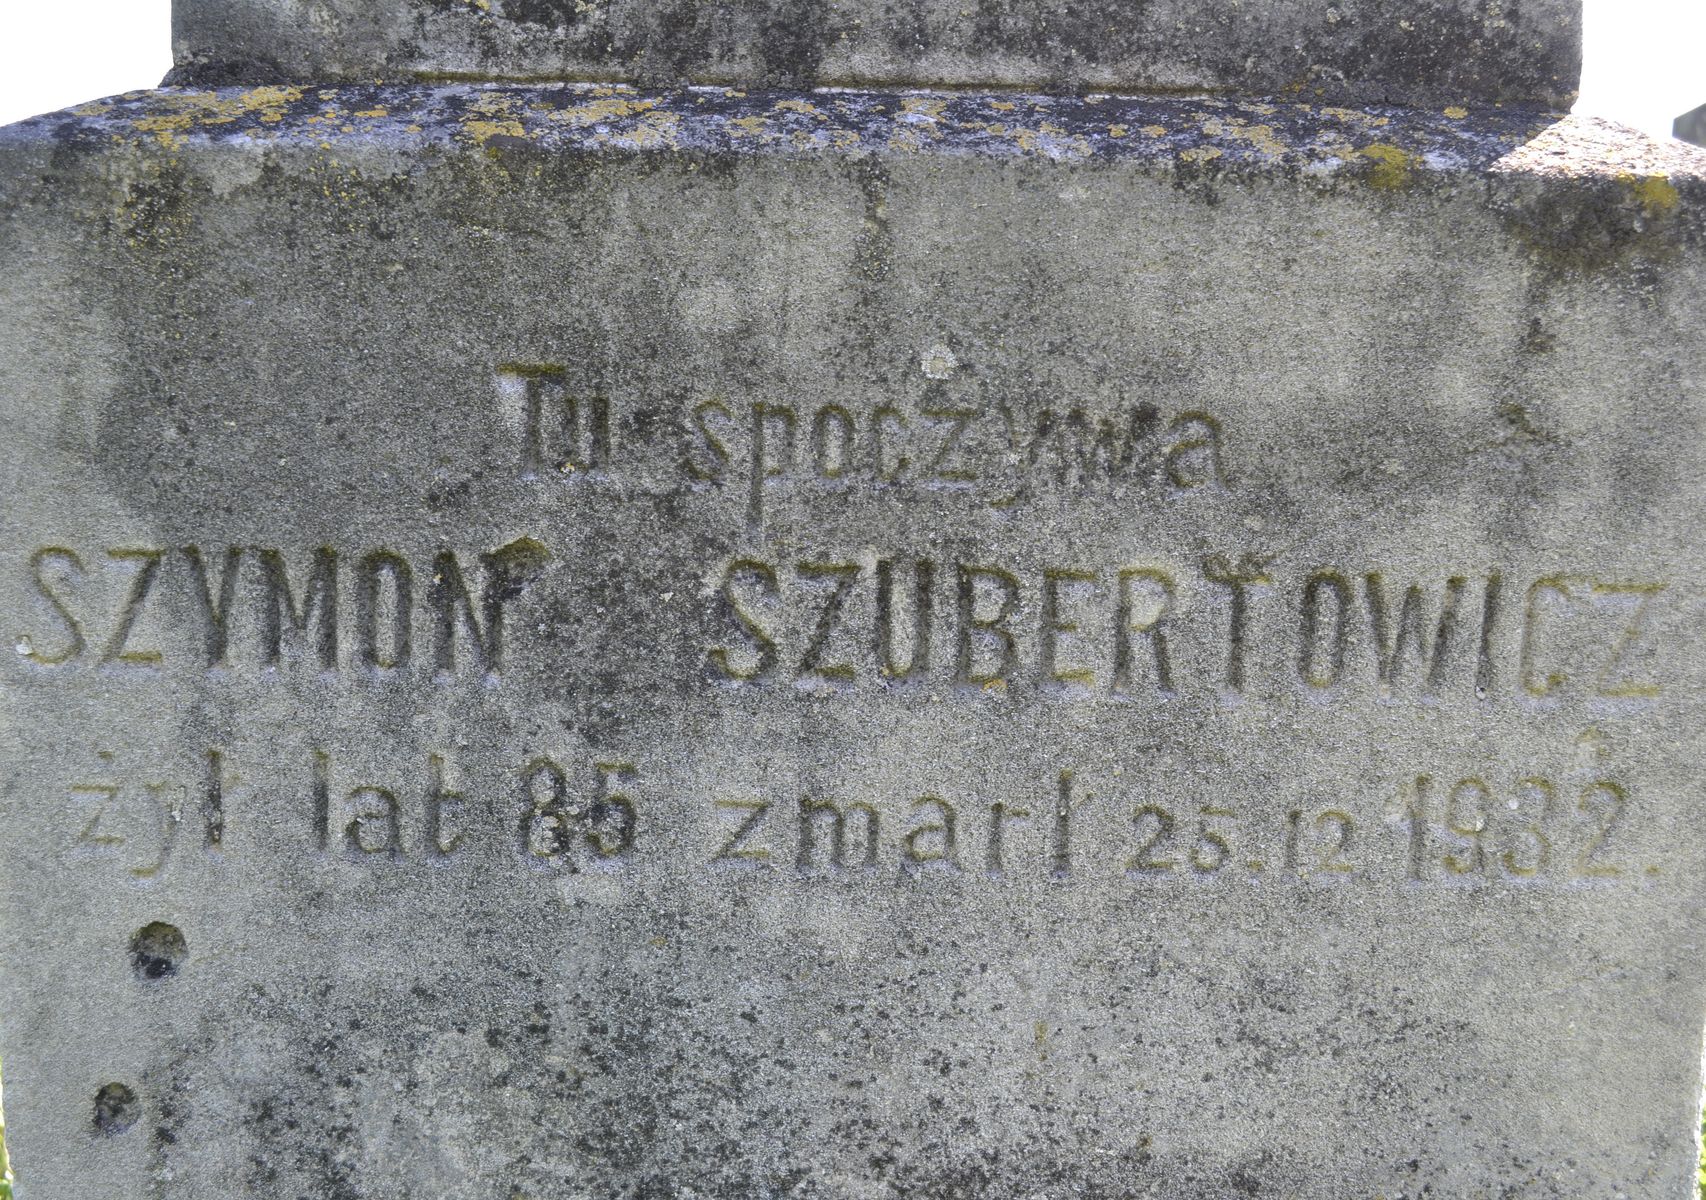 Inskrypcja z nagrobka Szymona Szubertowicza, cmentarz w Łozowej